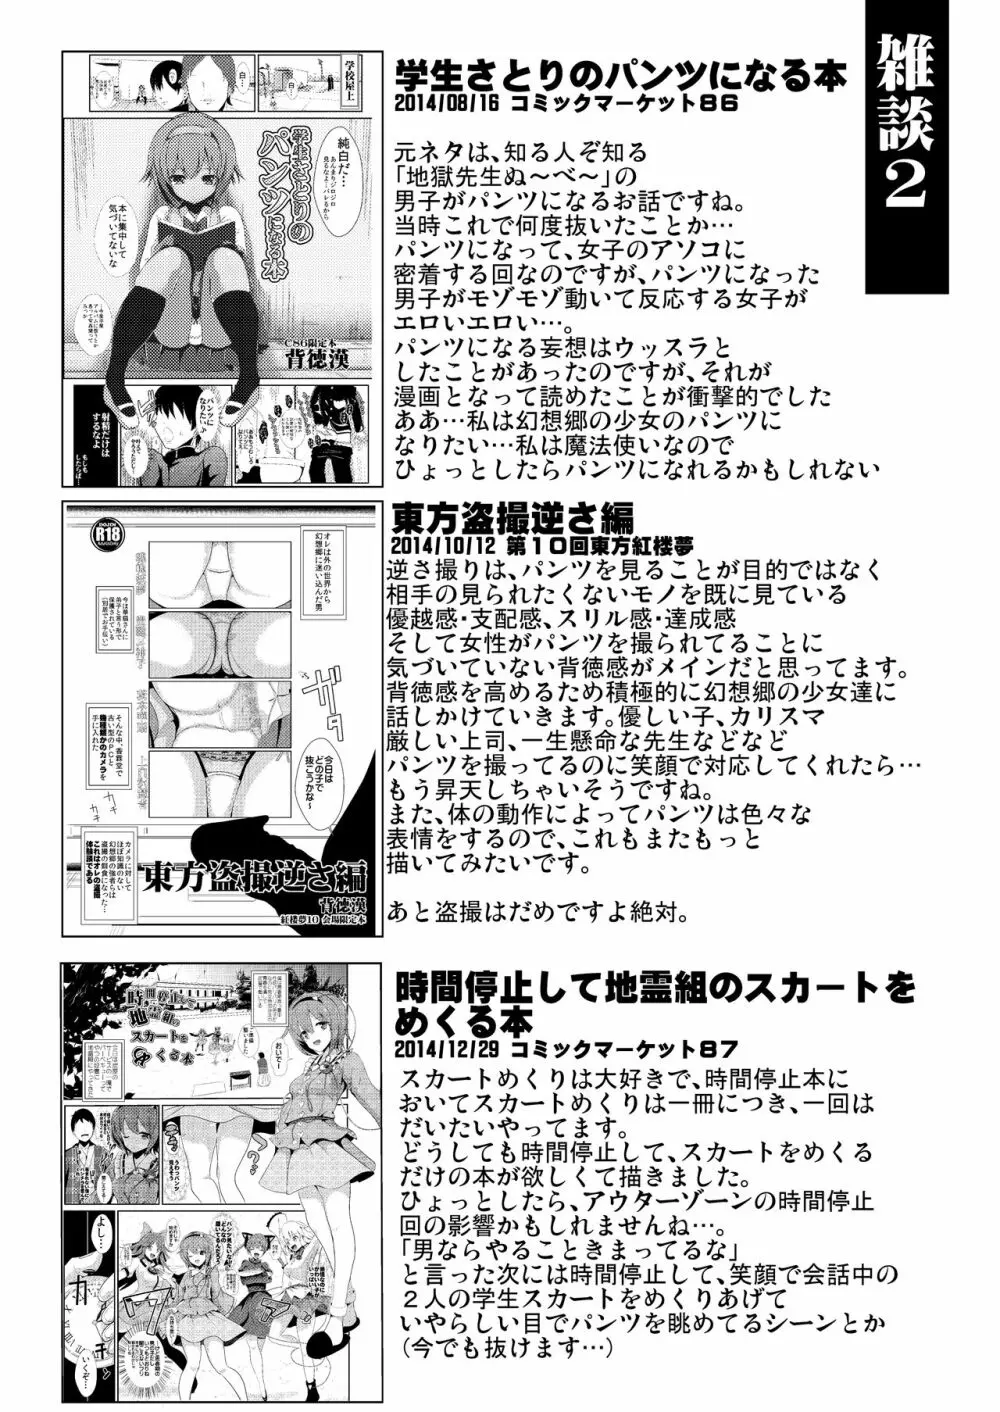 特殊シチュ短編総集編 東方シコるッ! 1 43ページ